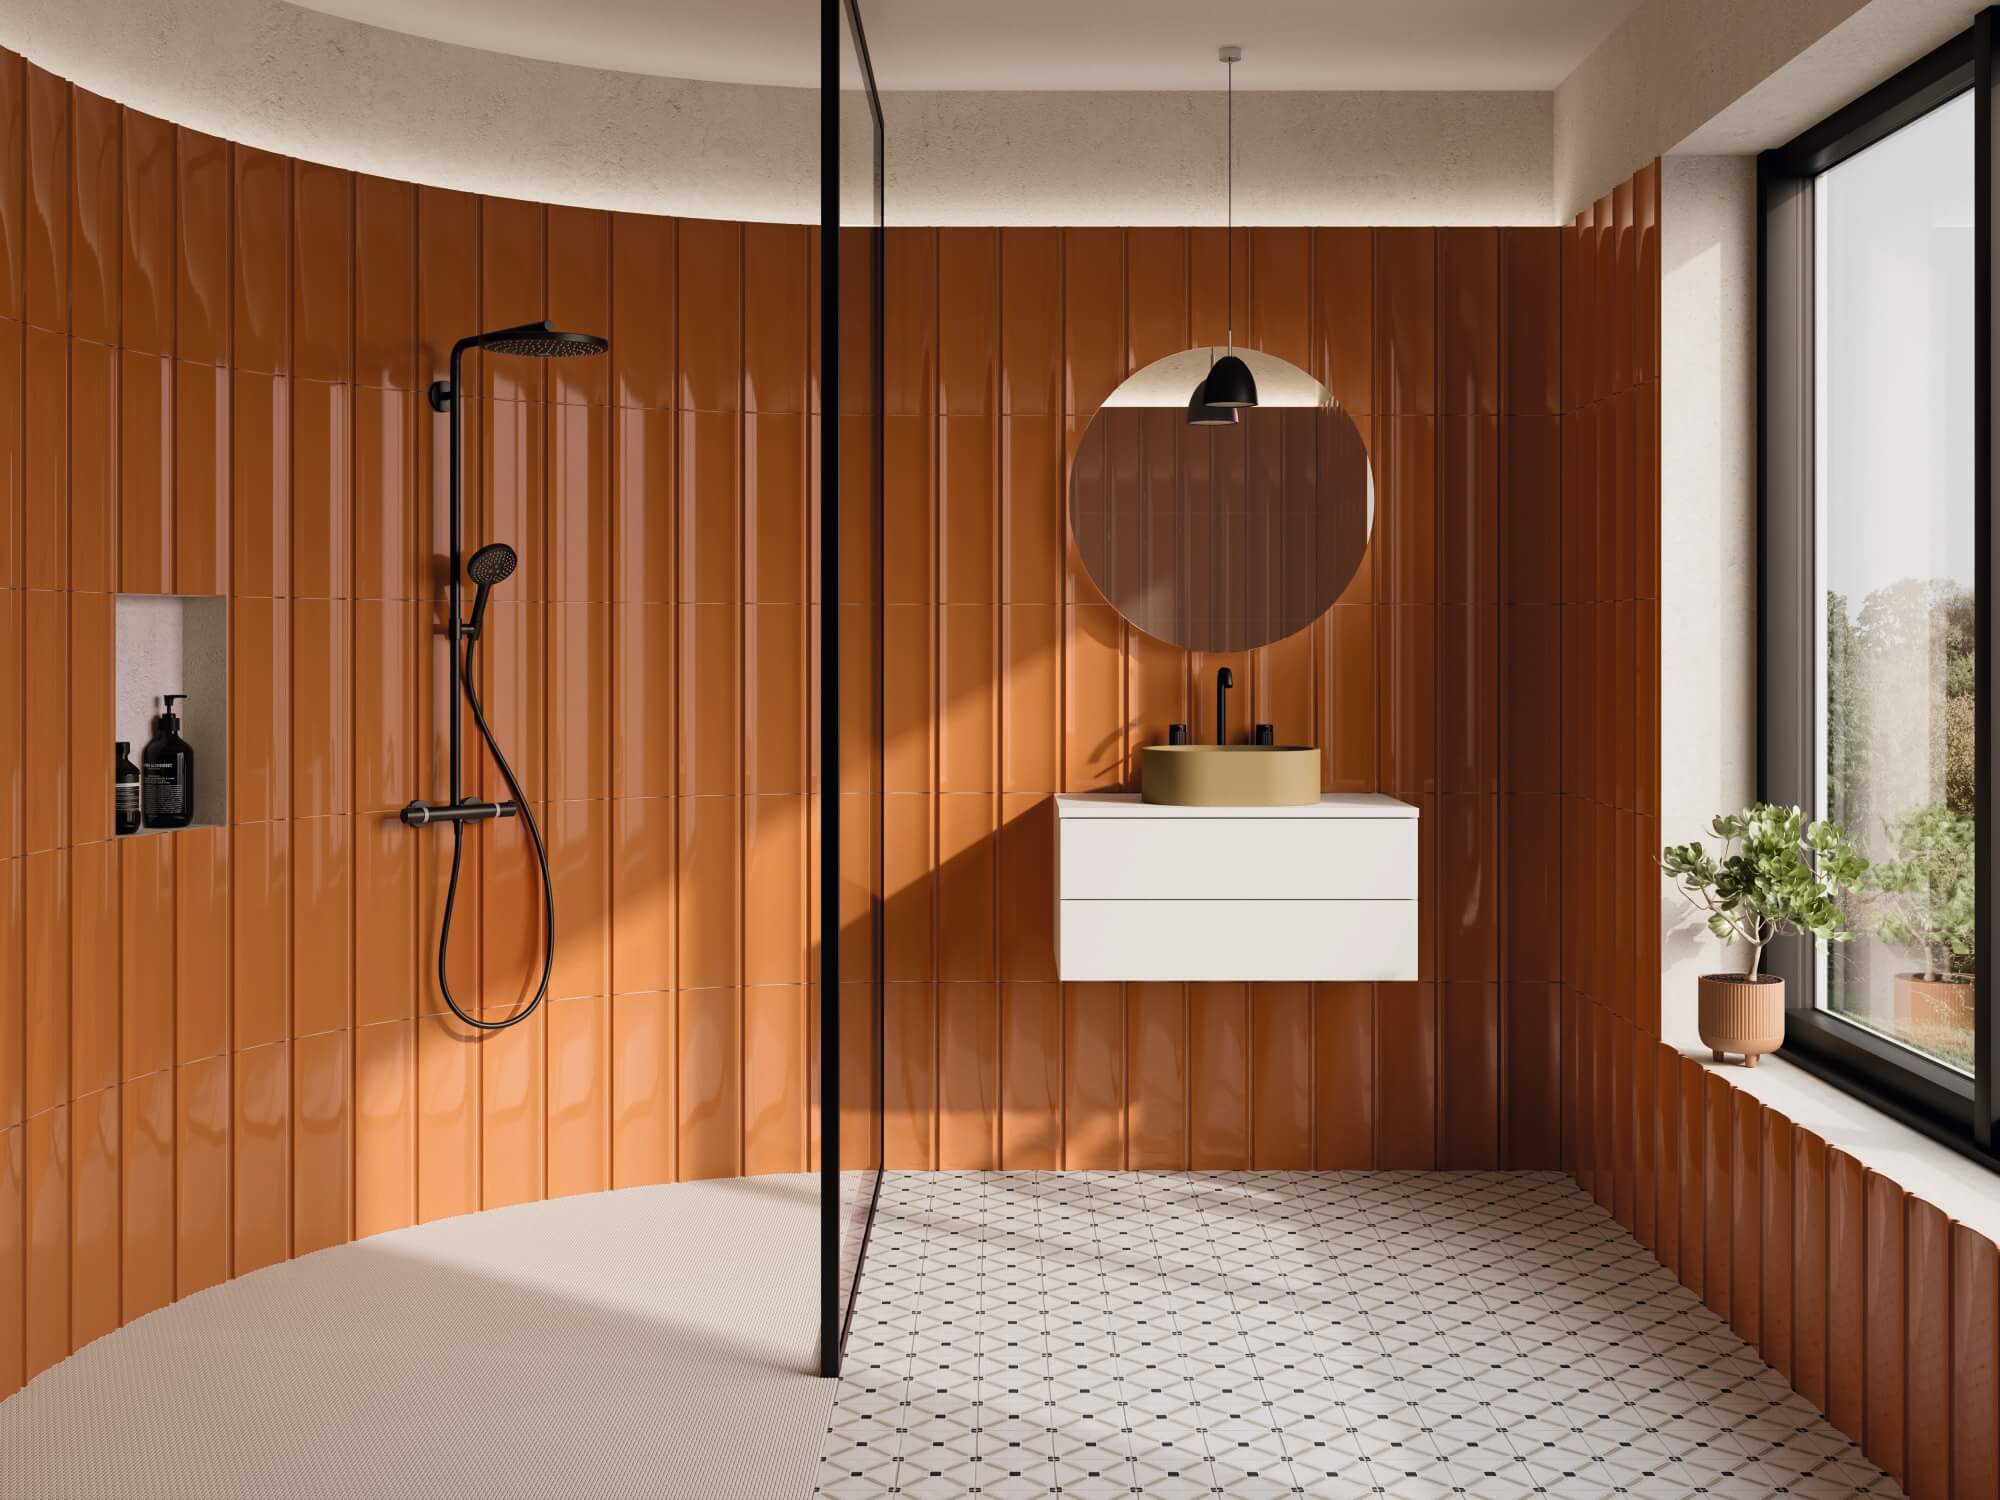 Półokrągła łazienka z patchworkową podłogą i brązowymi, trójwymiarowymi płytkami na ścianie, dużą strefą prysznicową, białą szafką wiszącą z beżową umywalką nablatową, okrągłym lustrem i lampą wiszącą